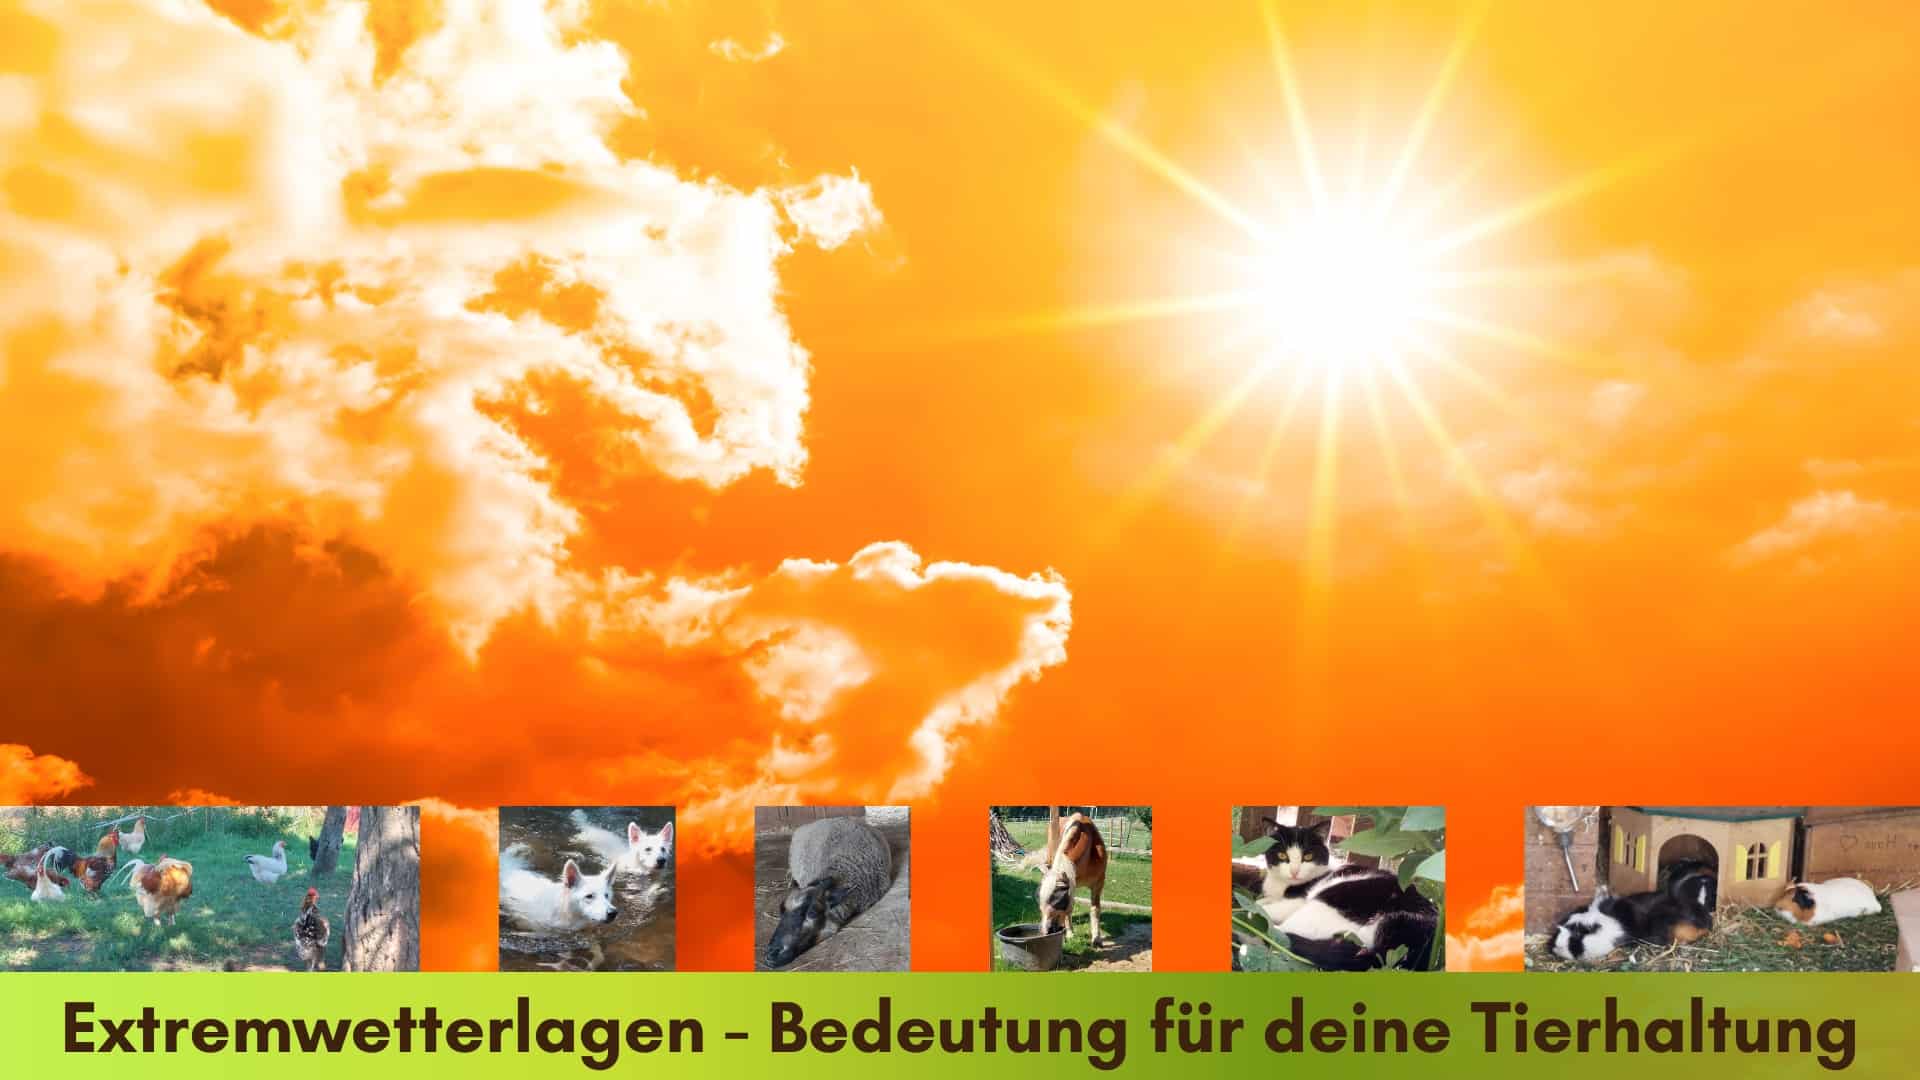 Extremwetterlagen Bedeutung für die Tierhaltung, glühender Sonnenschein